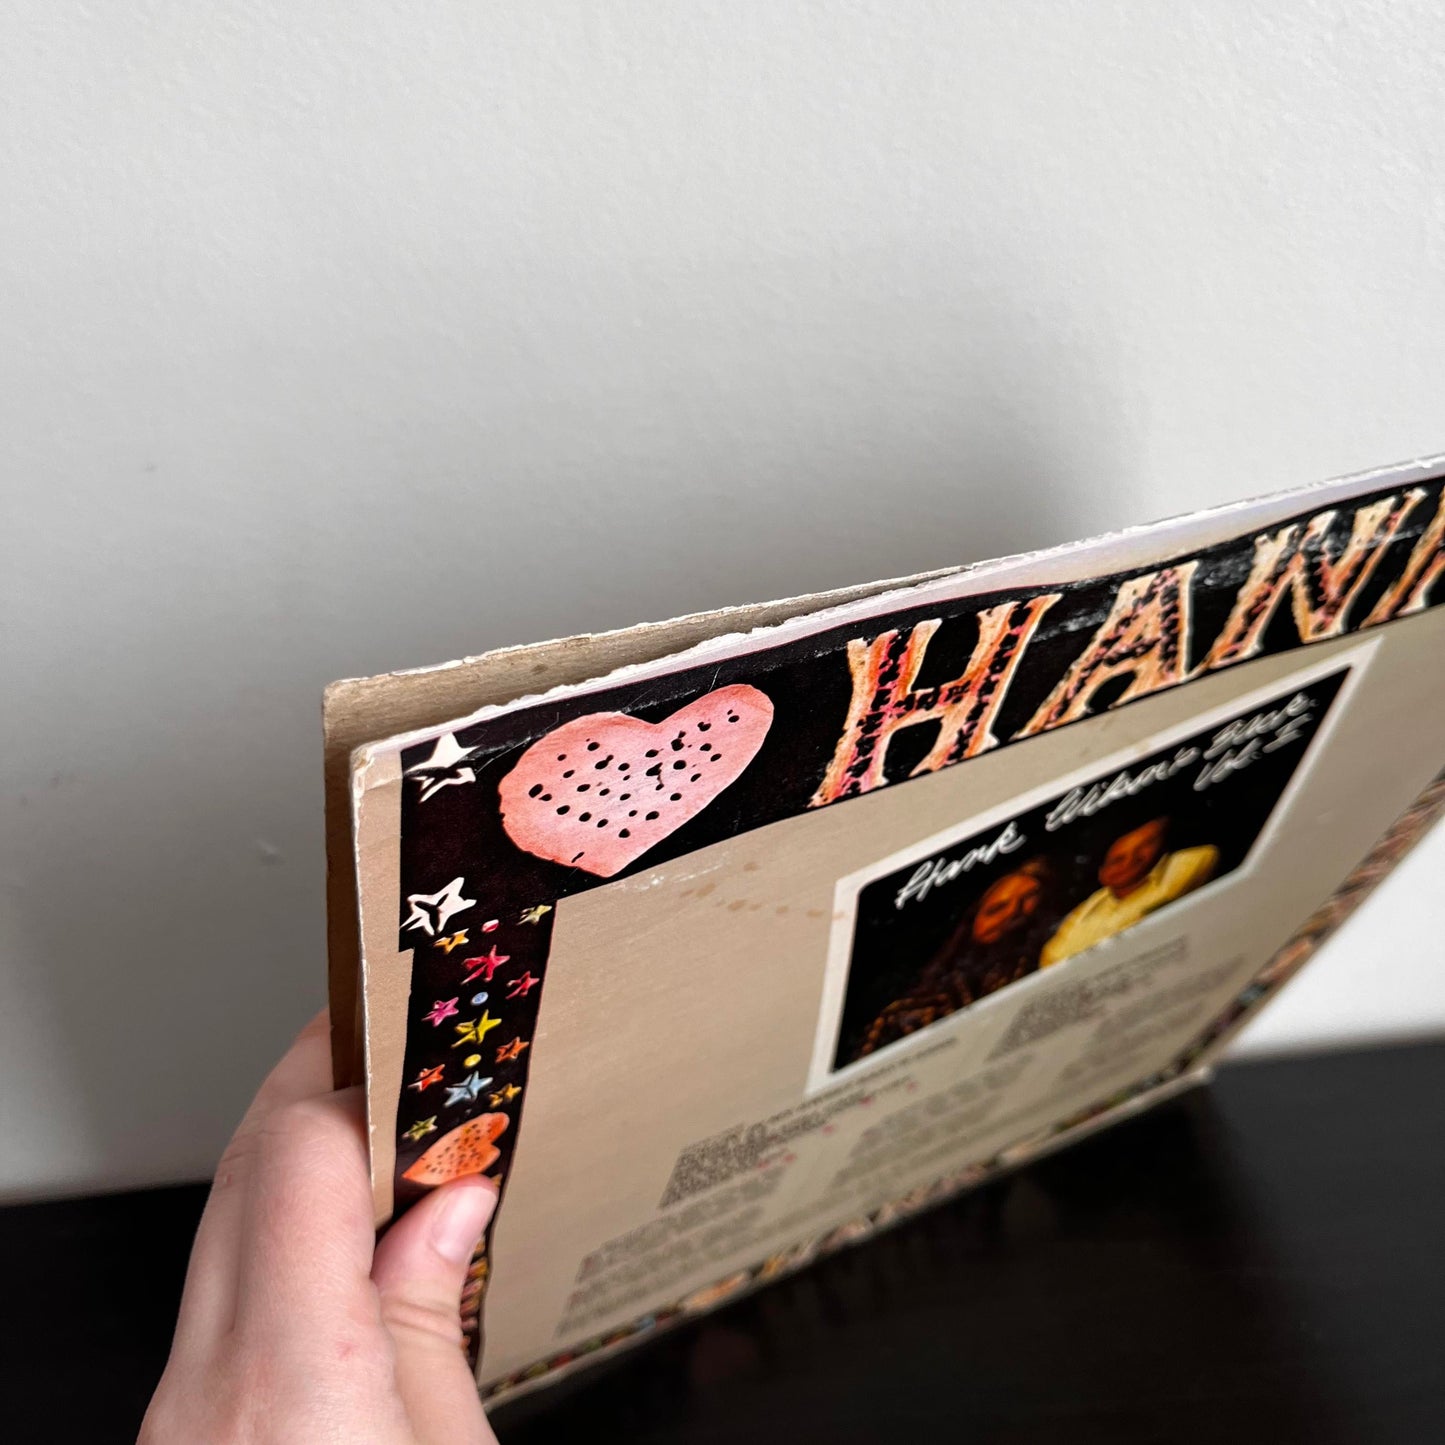 Hank Wilson's Back Vol. I SR 2131 Vinyl VG+